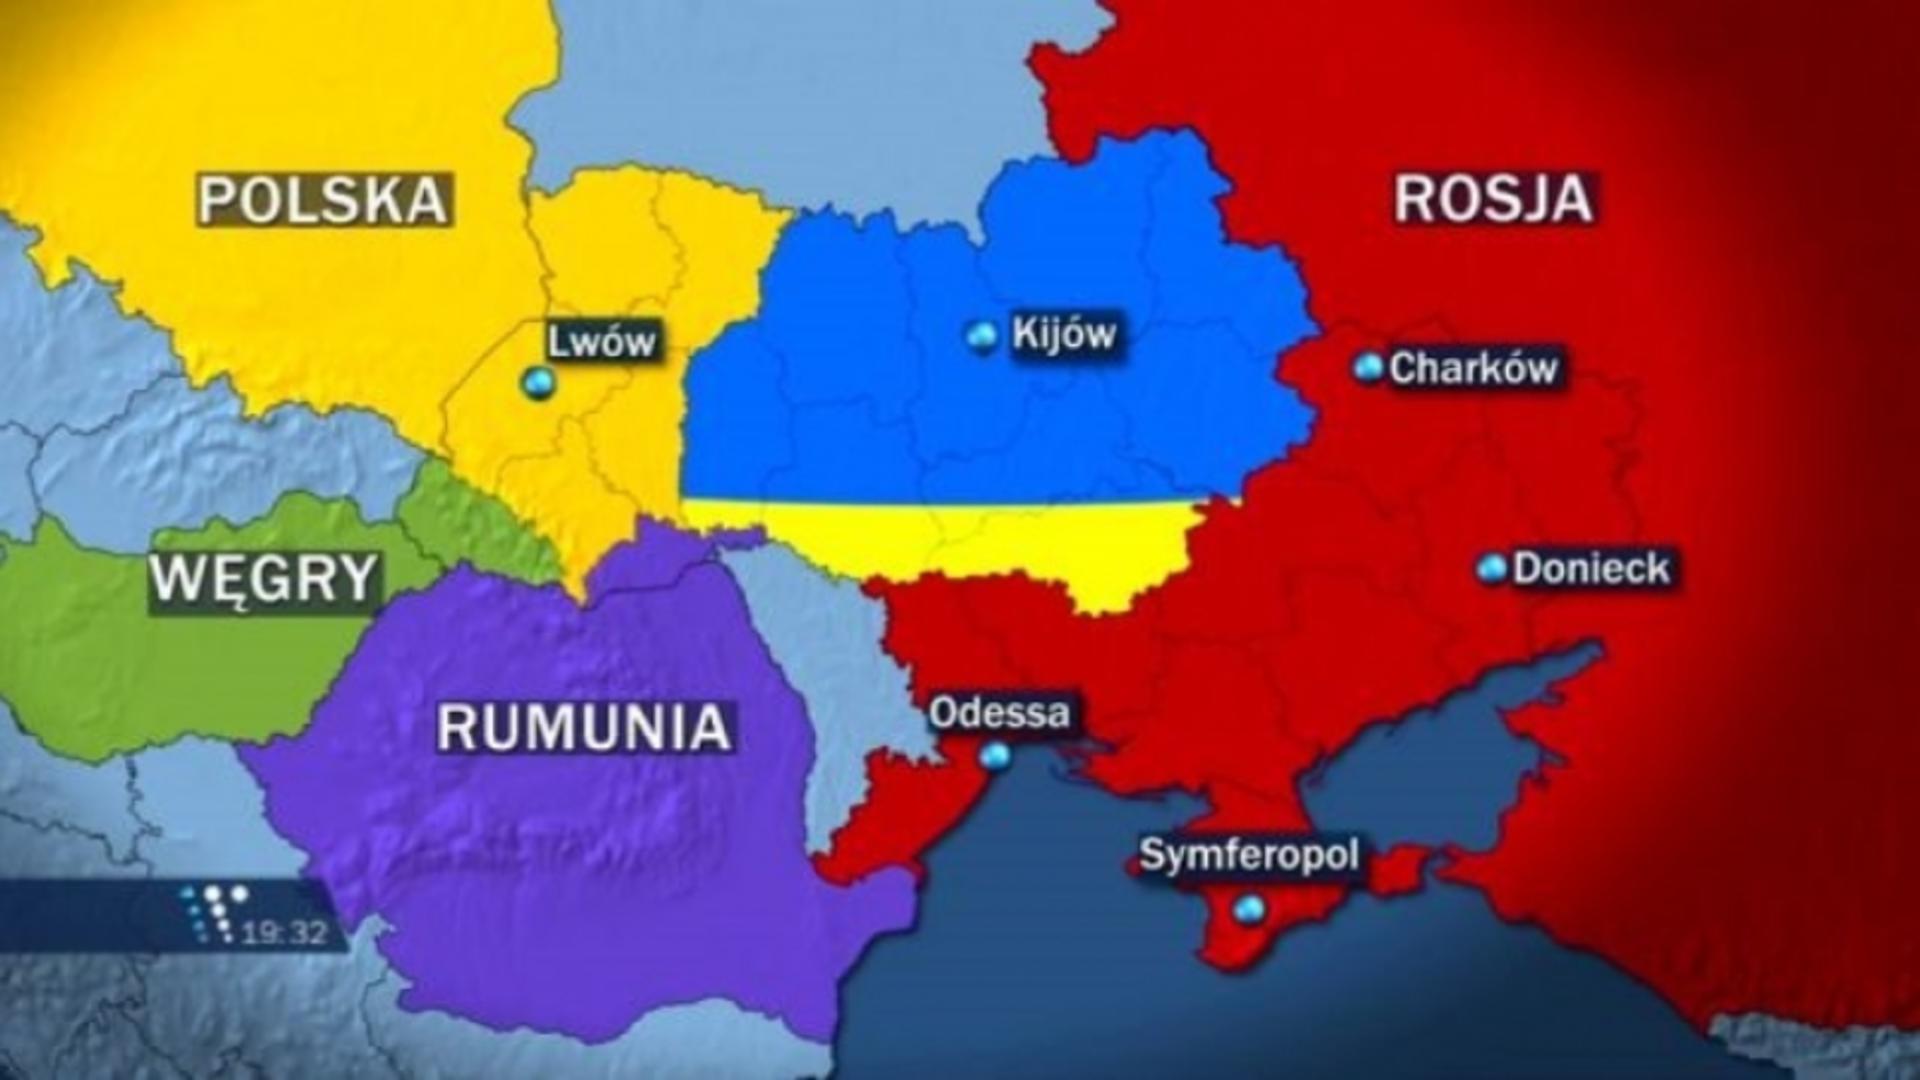 Scenariul halucinant al unui deputat rus. Cum ar ajunge Rusia, din nou, la granița României?